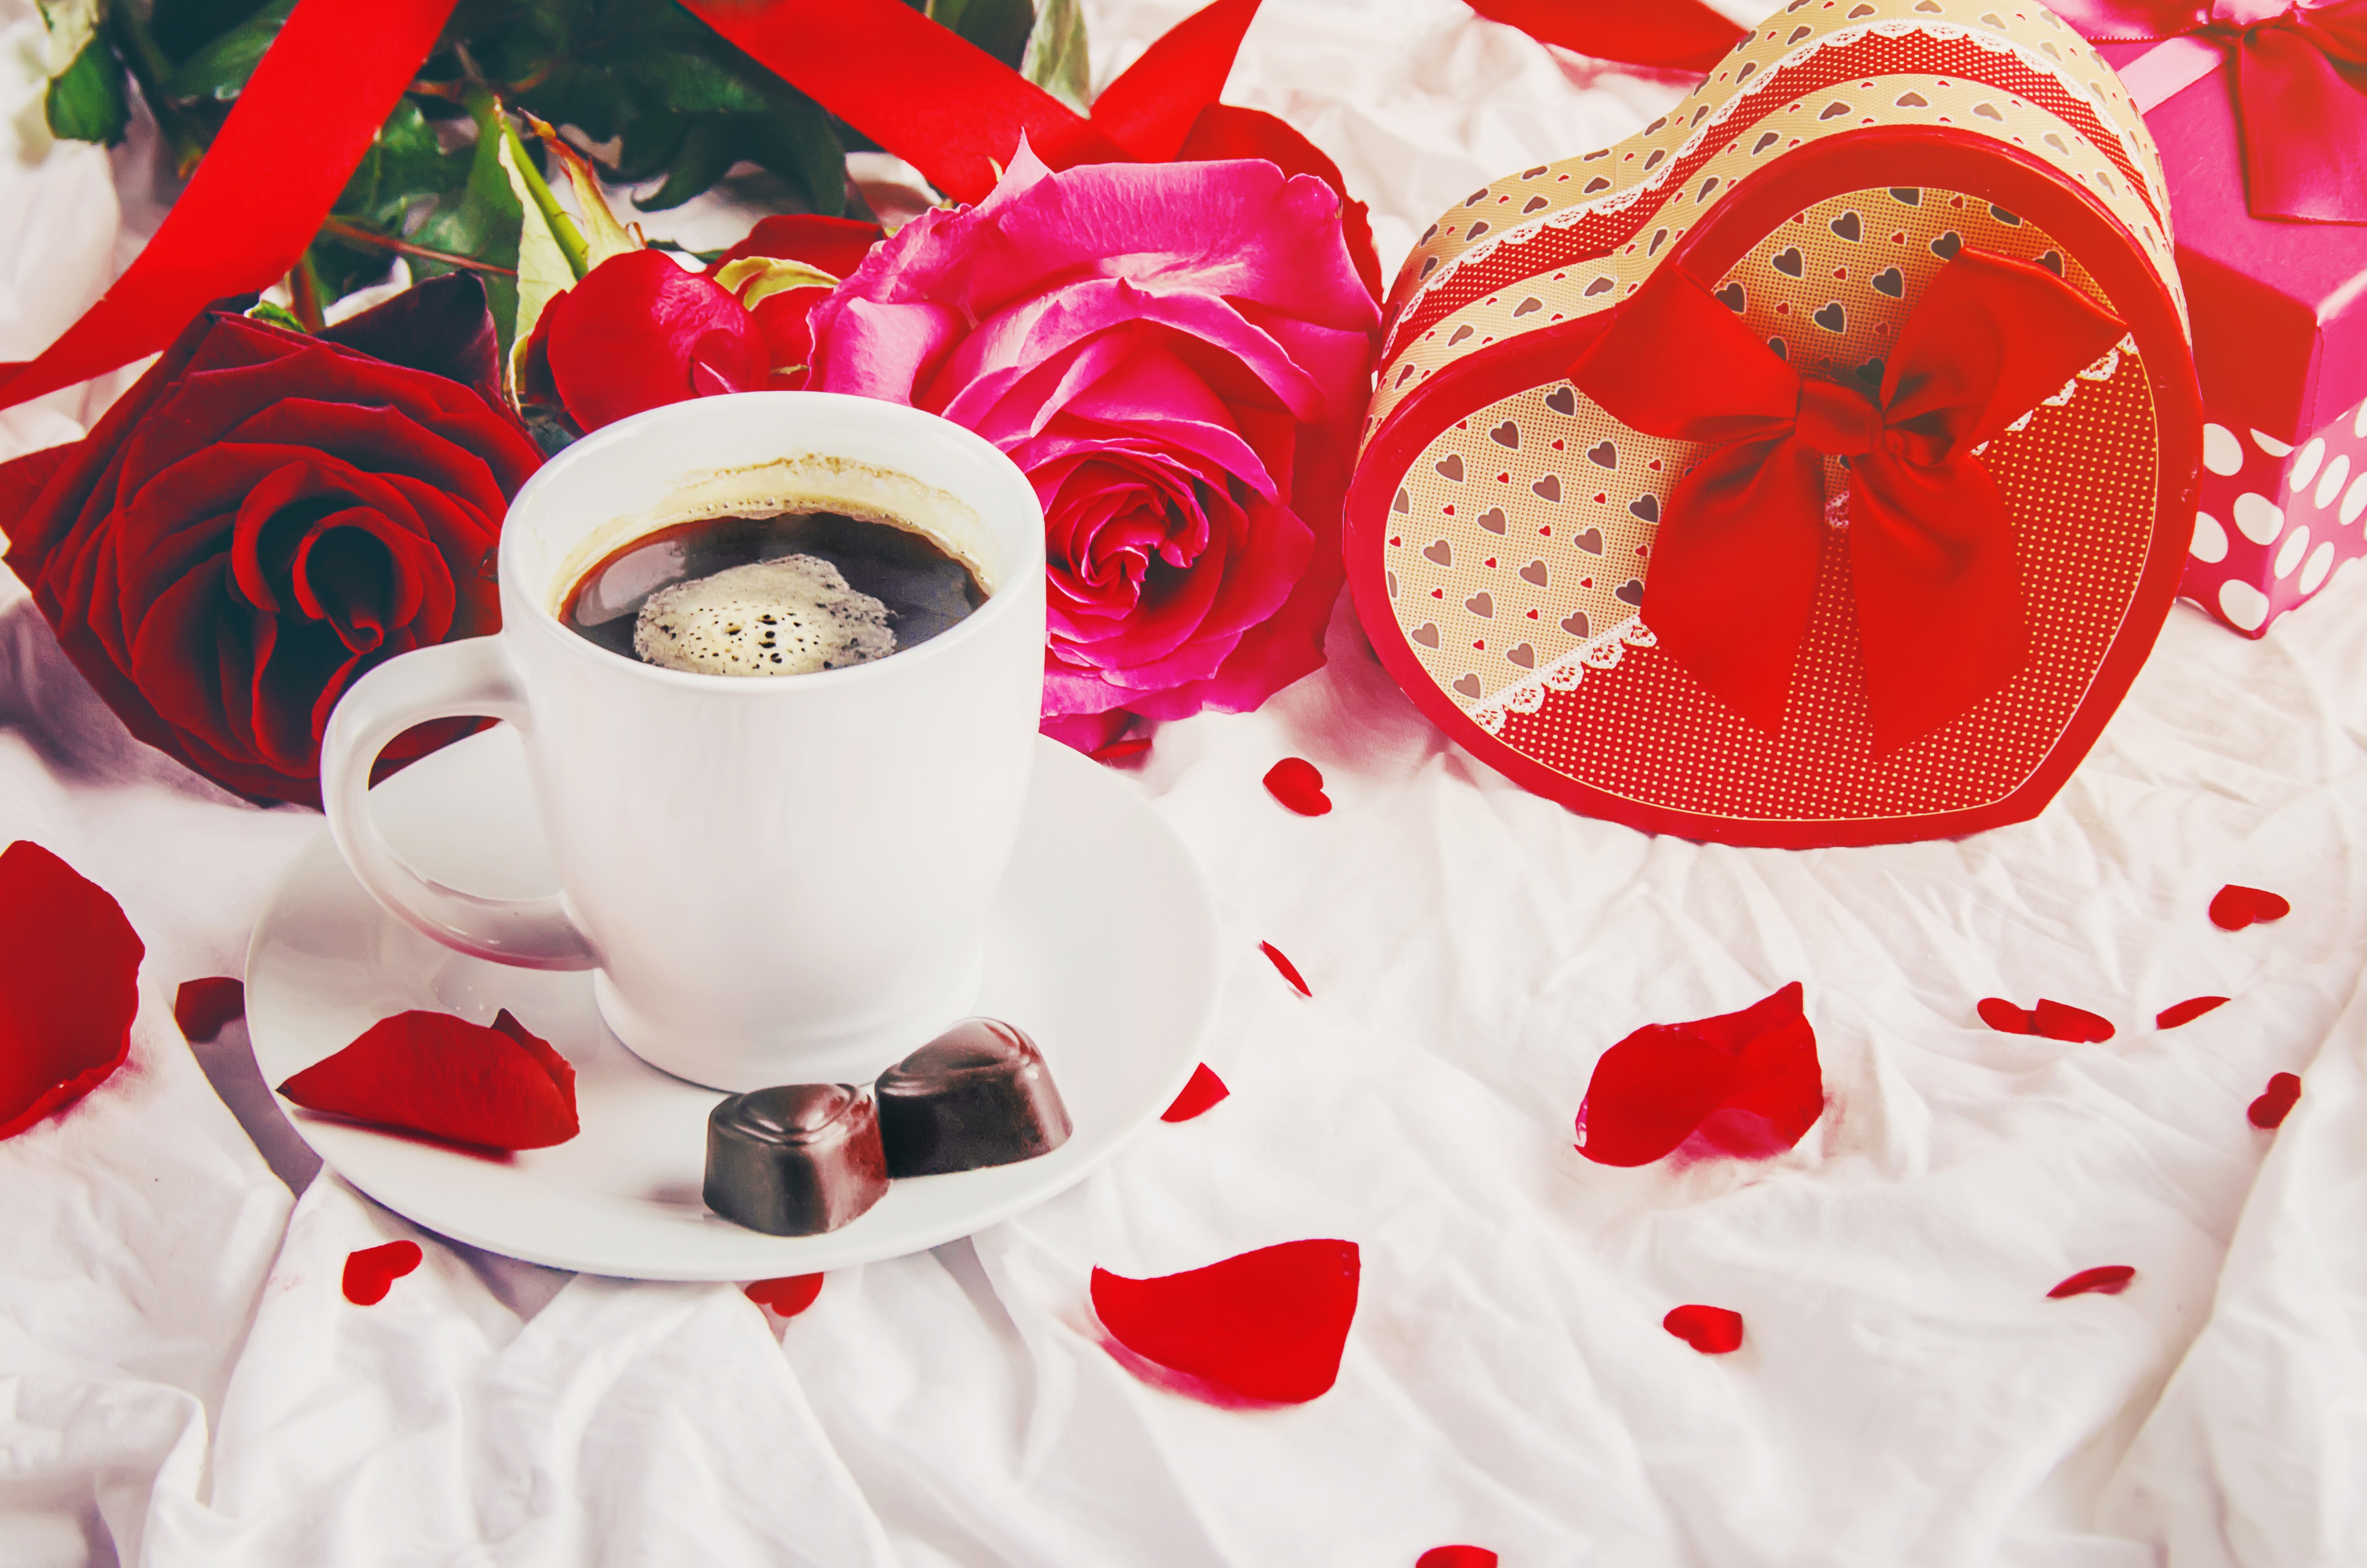 Скачать обои бесплатно Кофе, Натюрморт, Цветок, Роза, Чашка, Подарки, День Святого Валентина, Праздничные, В Форме Сердца картинка на рабочий стол ПК